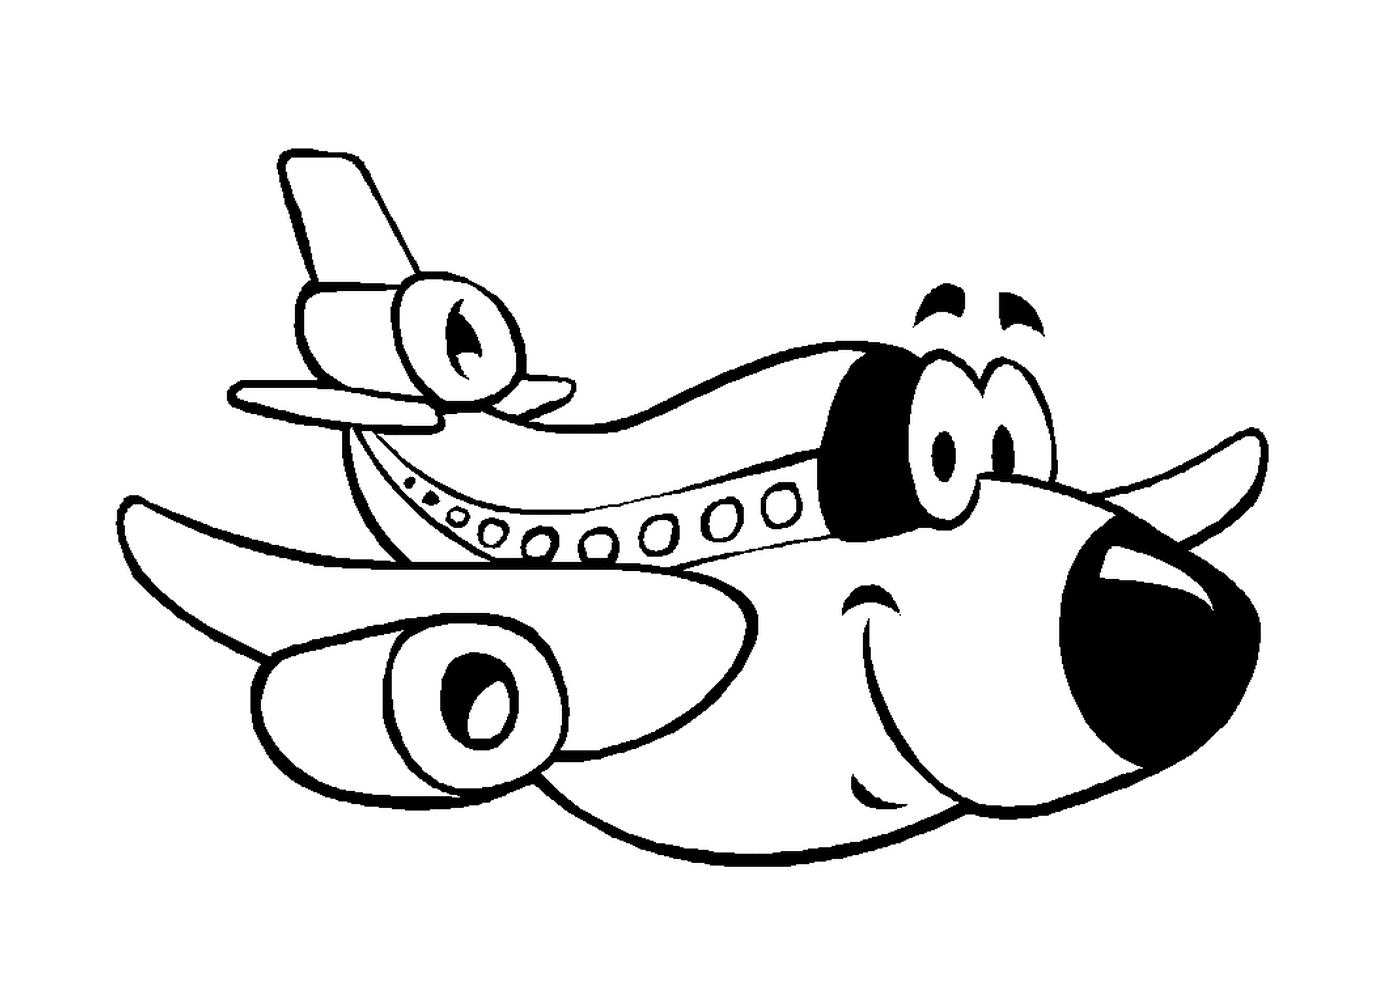   Un avion avec un visage sur son flanc 